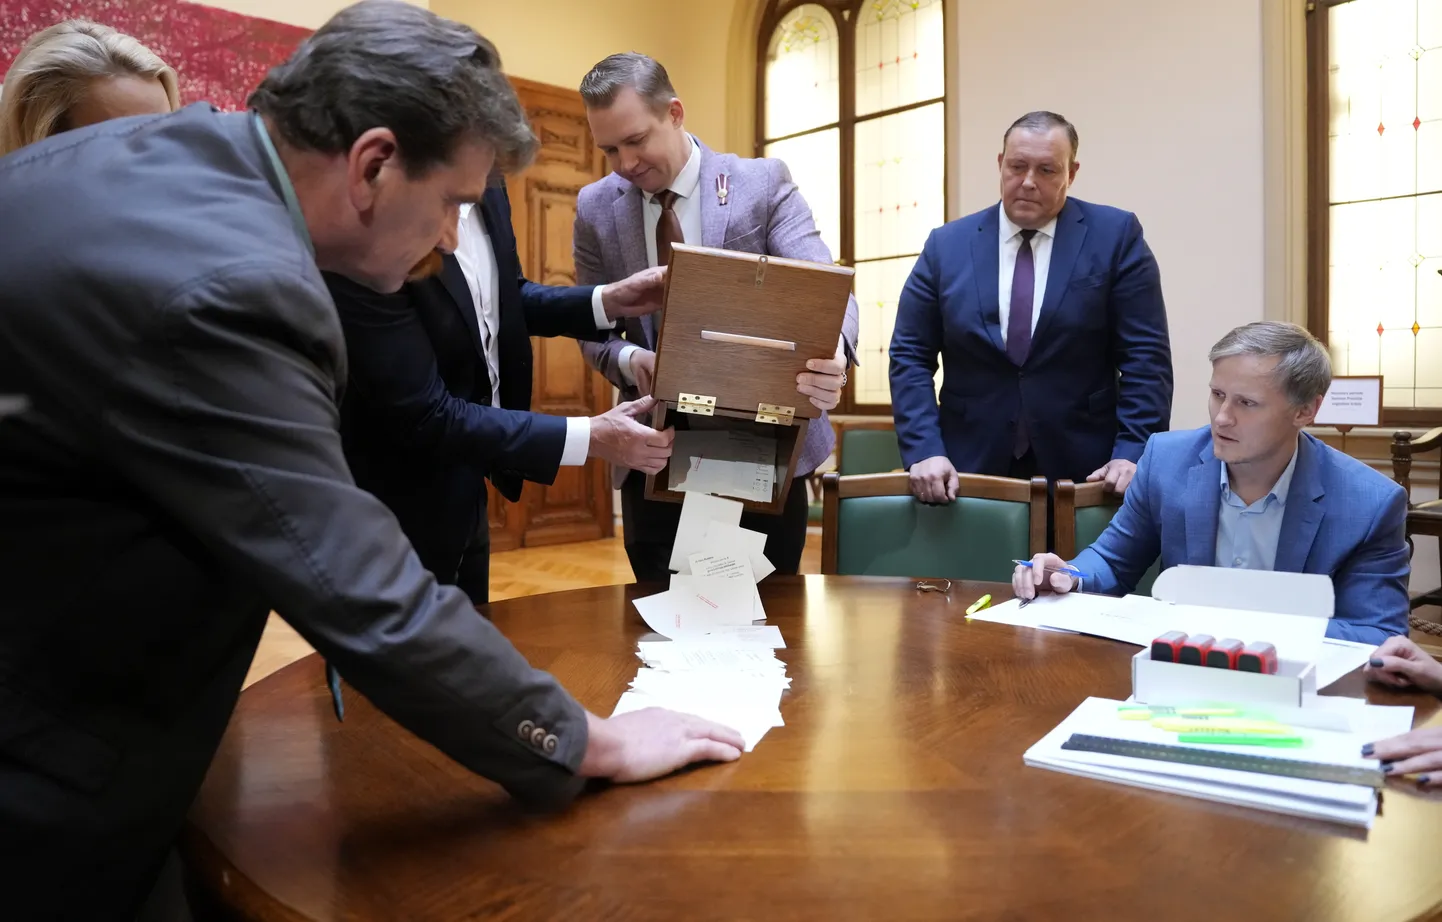 Saeimas deputāti Ingmārs Līdaka (no kreisās), Harijs Rokpelnis, iekšlietu ministrs Rihards Kozlovskis un Rihards Kols skaita balsis Saeimas ārkārtas sēdē, kurā notika Saeimas priekšsēdētāja vēlēšanu pirmā kārta.